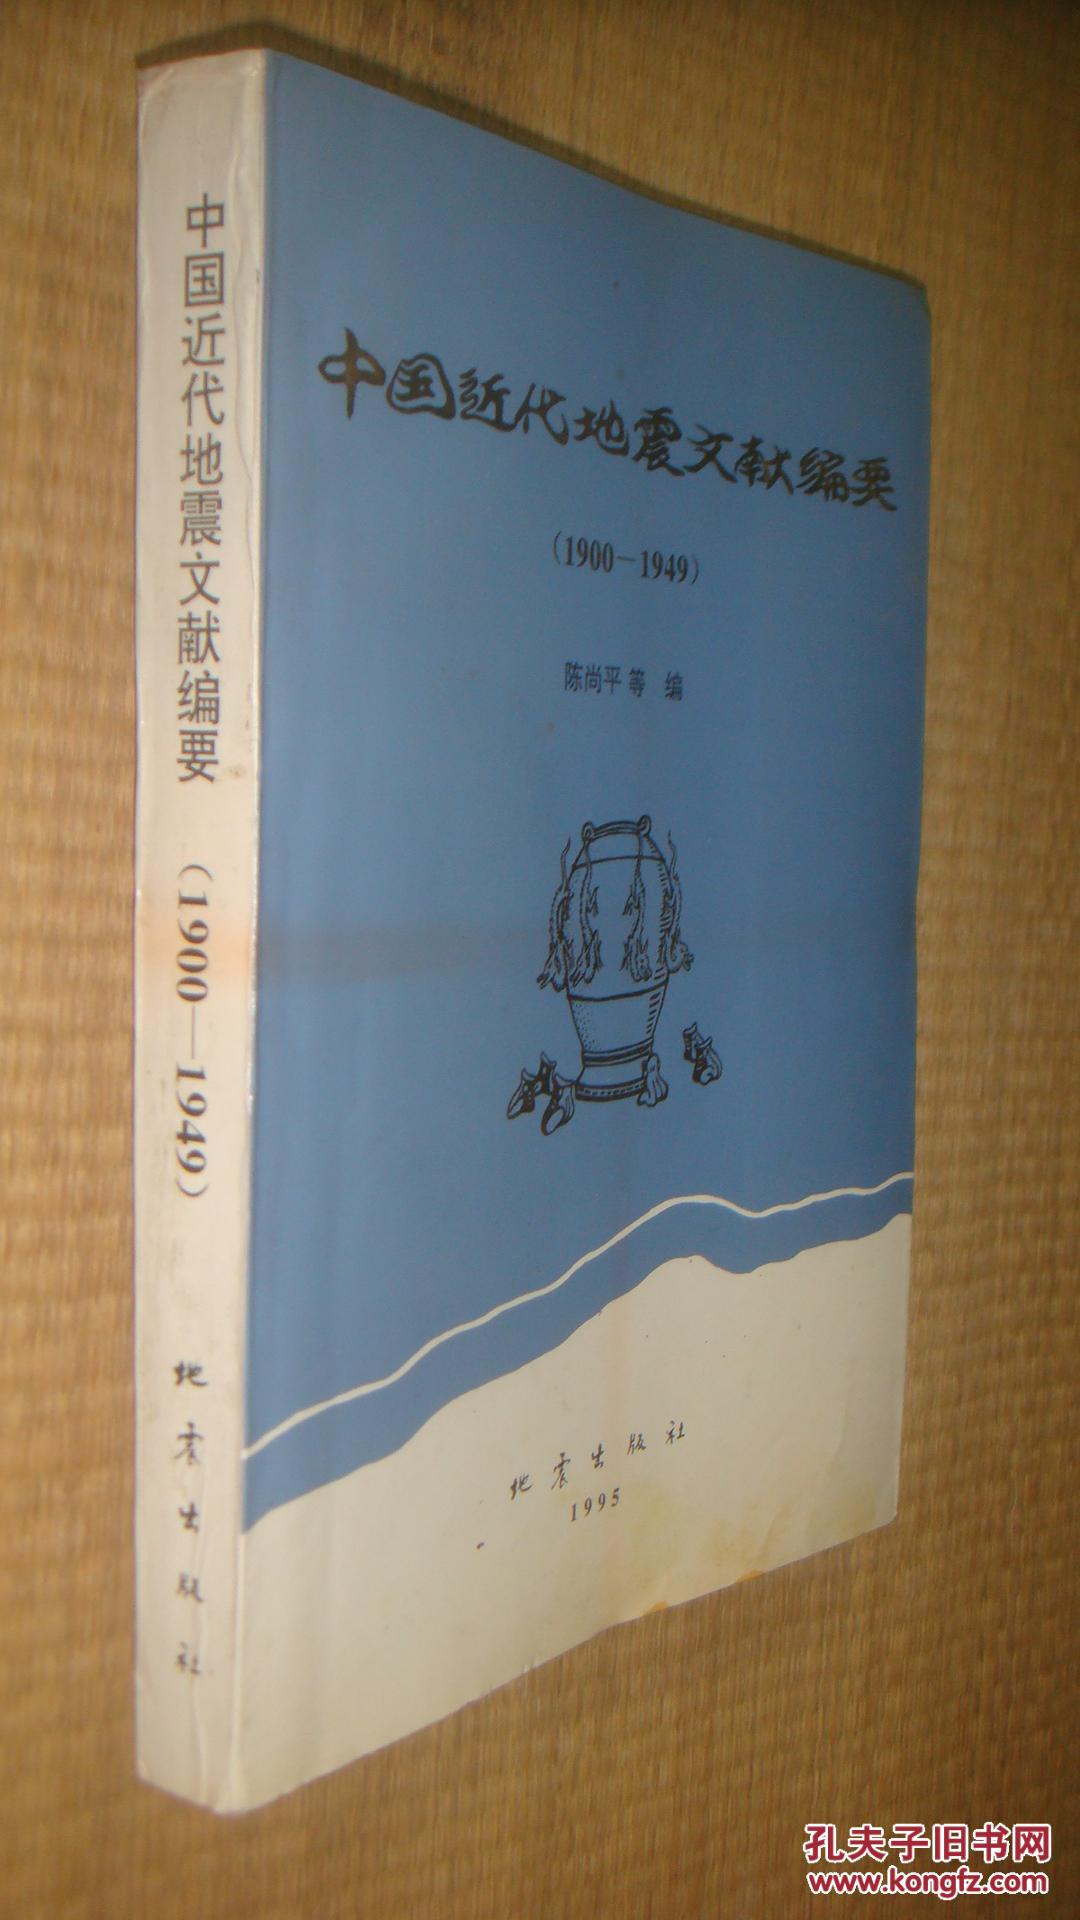 中国近代地震文献编要【1900--1949】